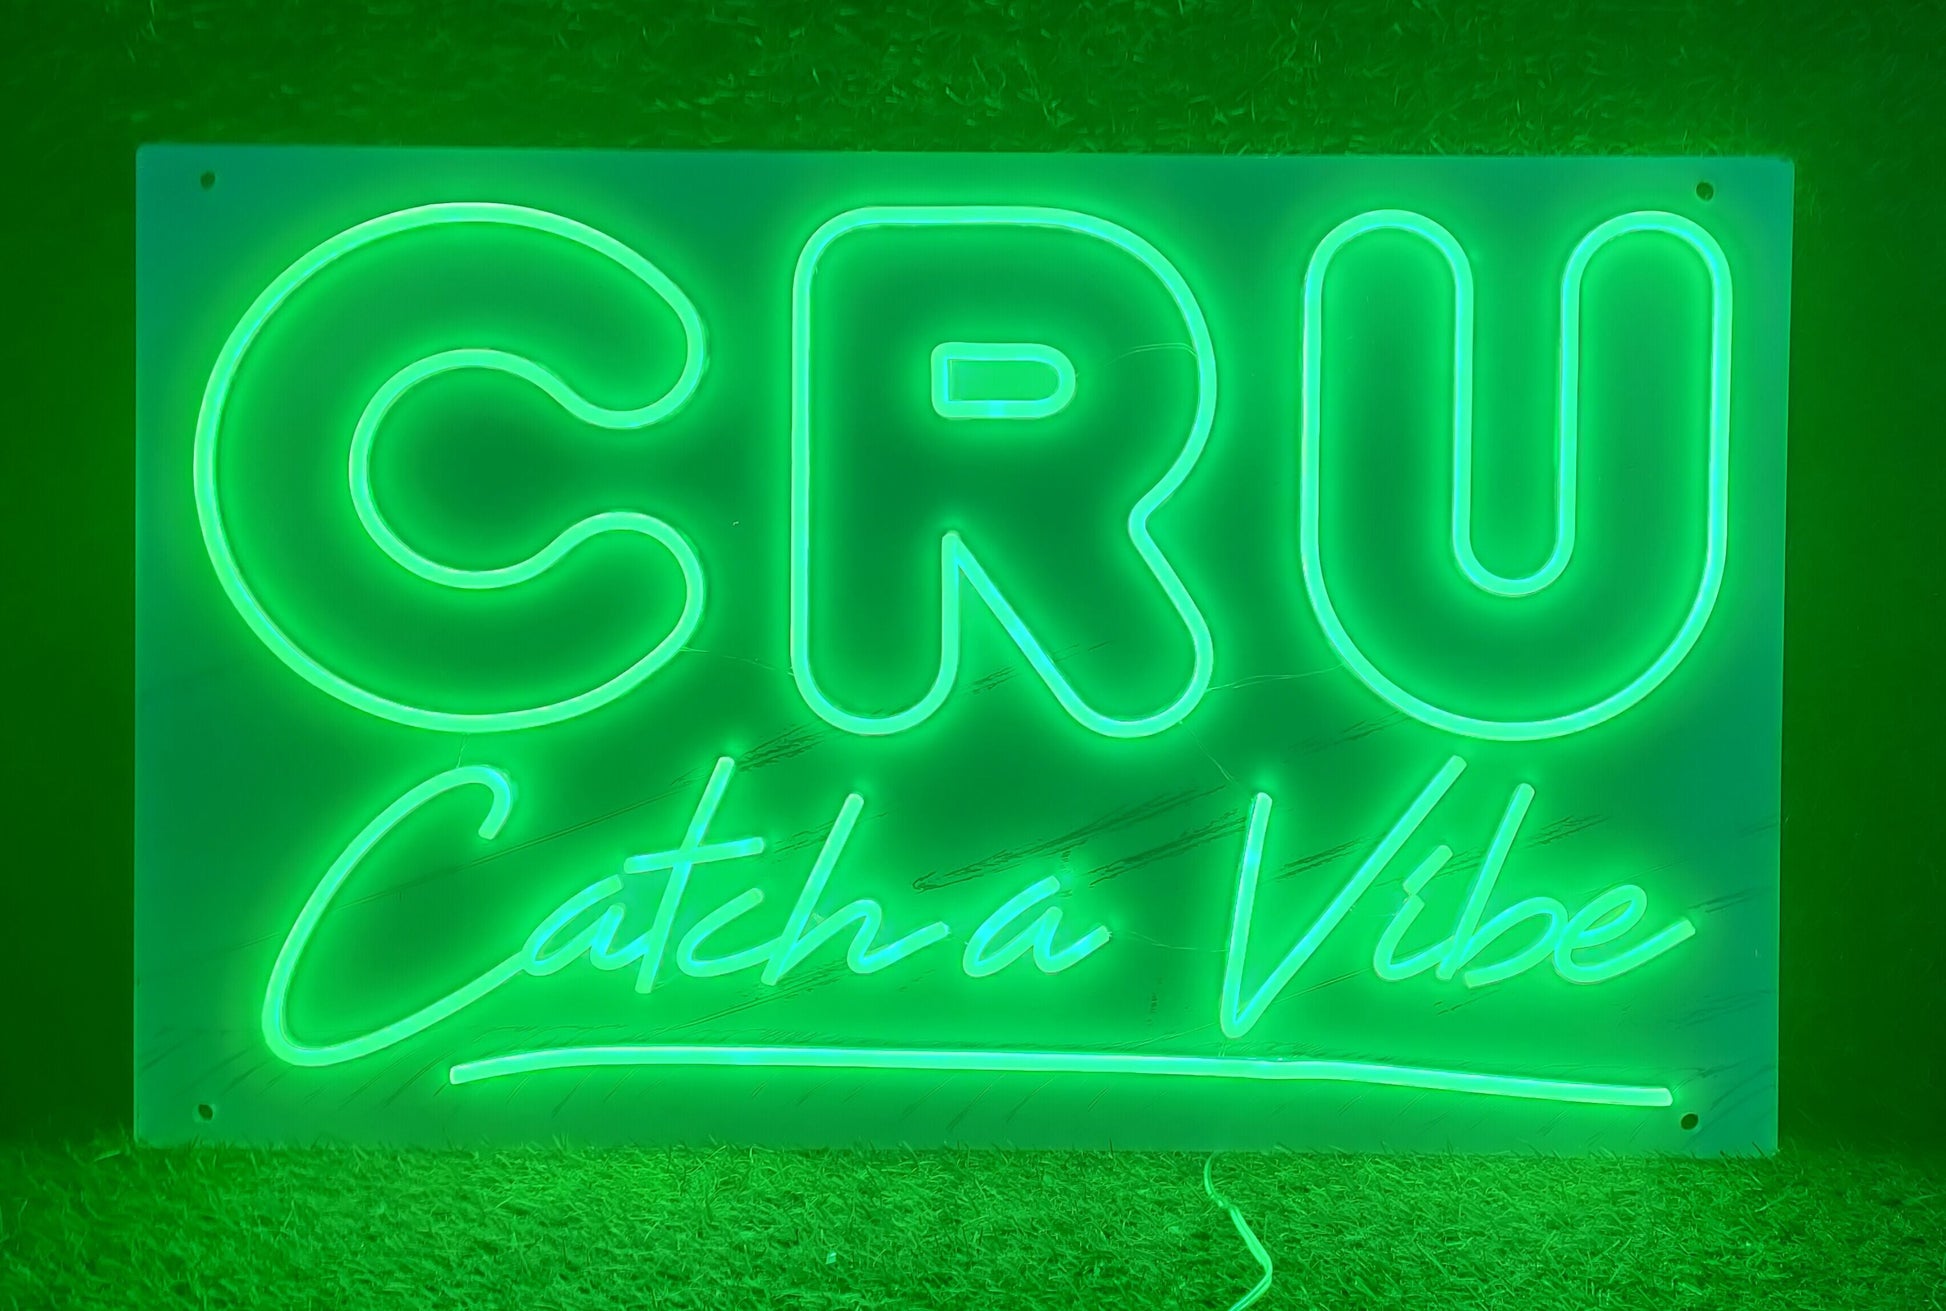 CRU Catch a Vibe Neon Sign